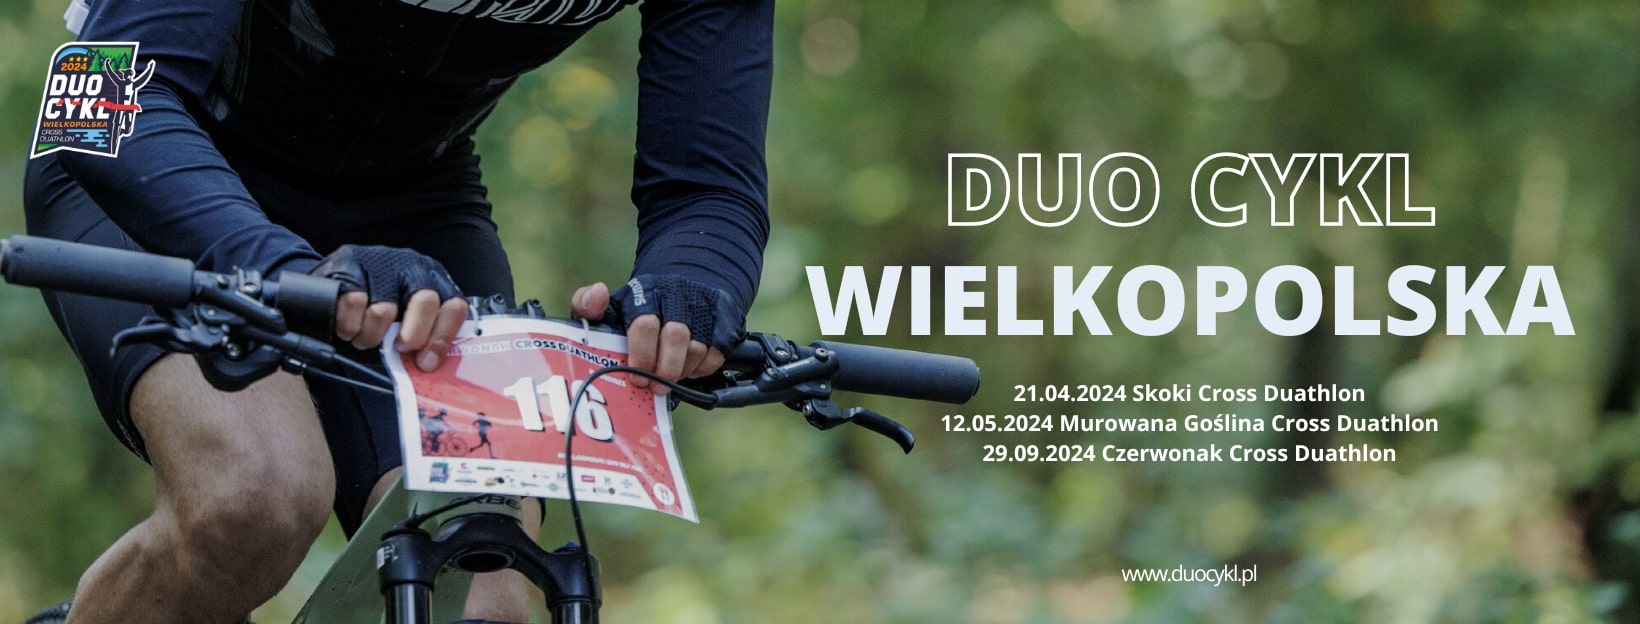 Duo Cykl Wielkopolska 12 maja br., kierownica roweru